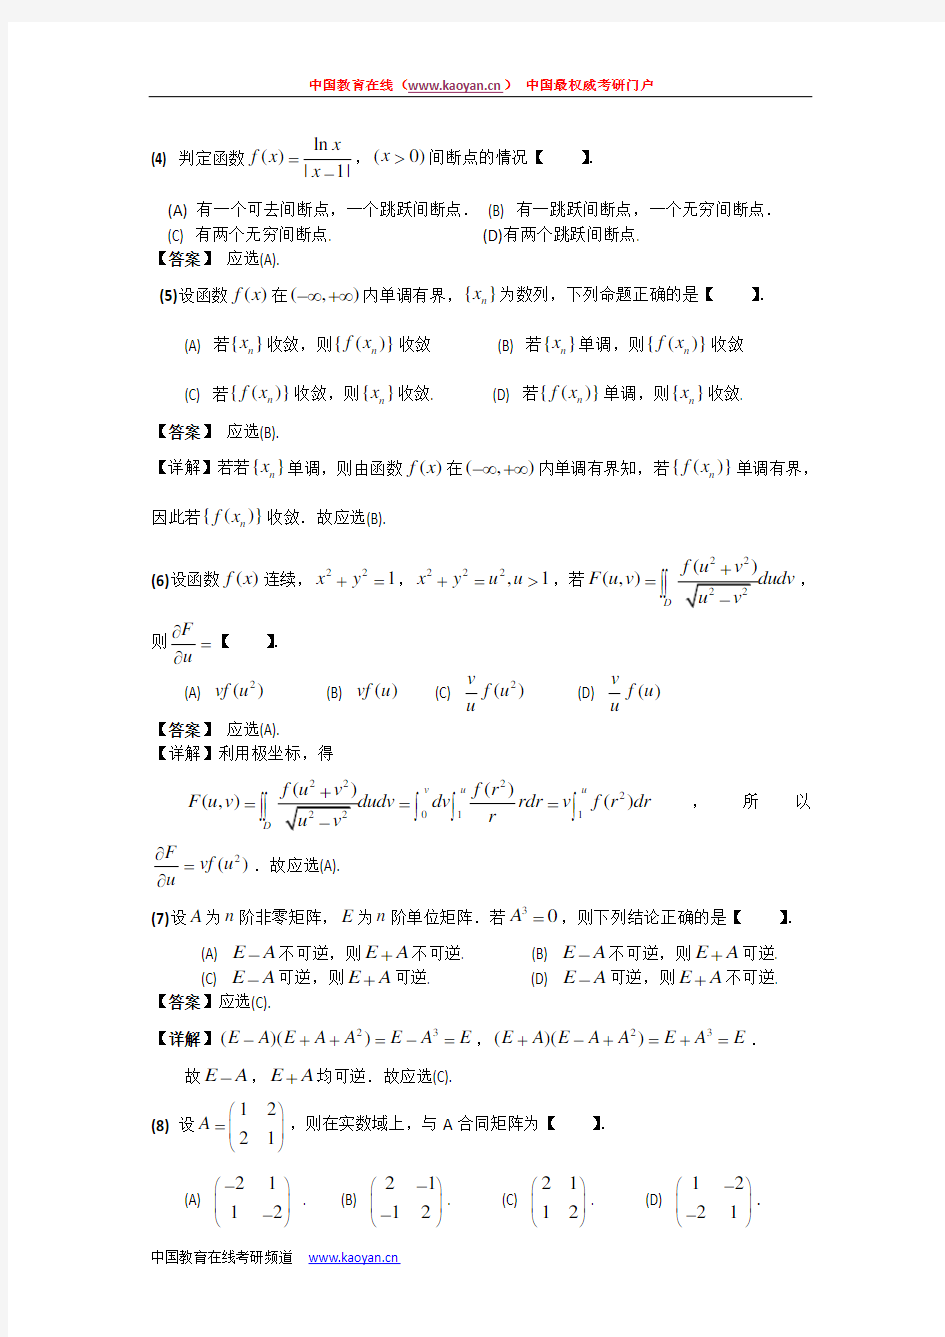 2008年考研数学数学二试题答案